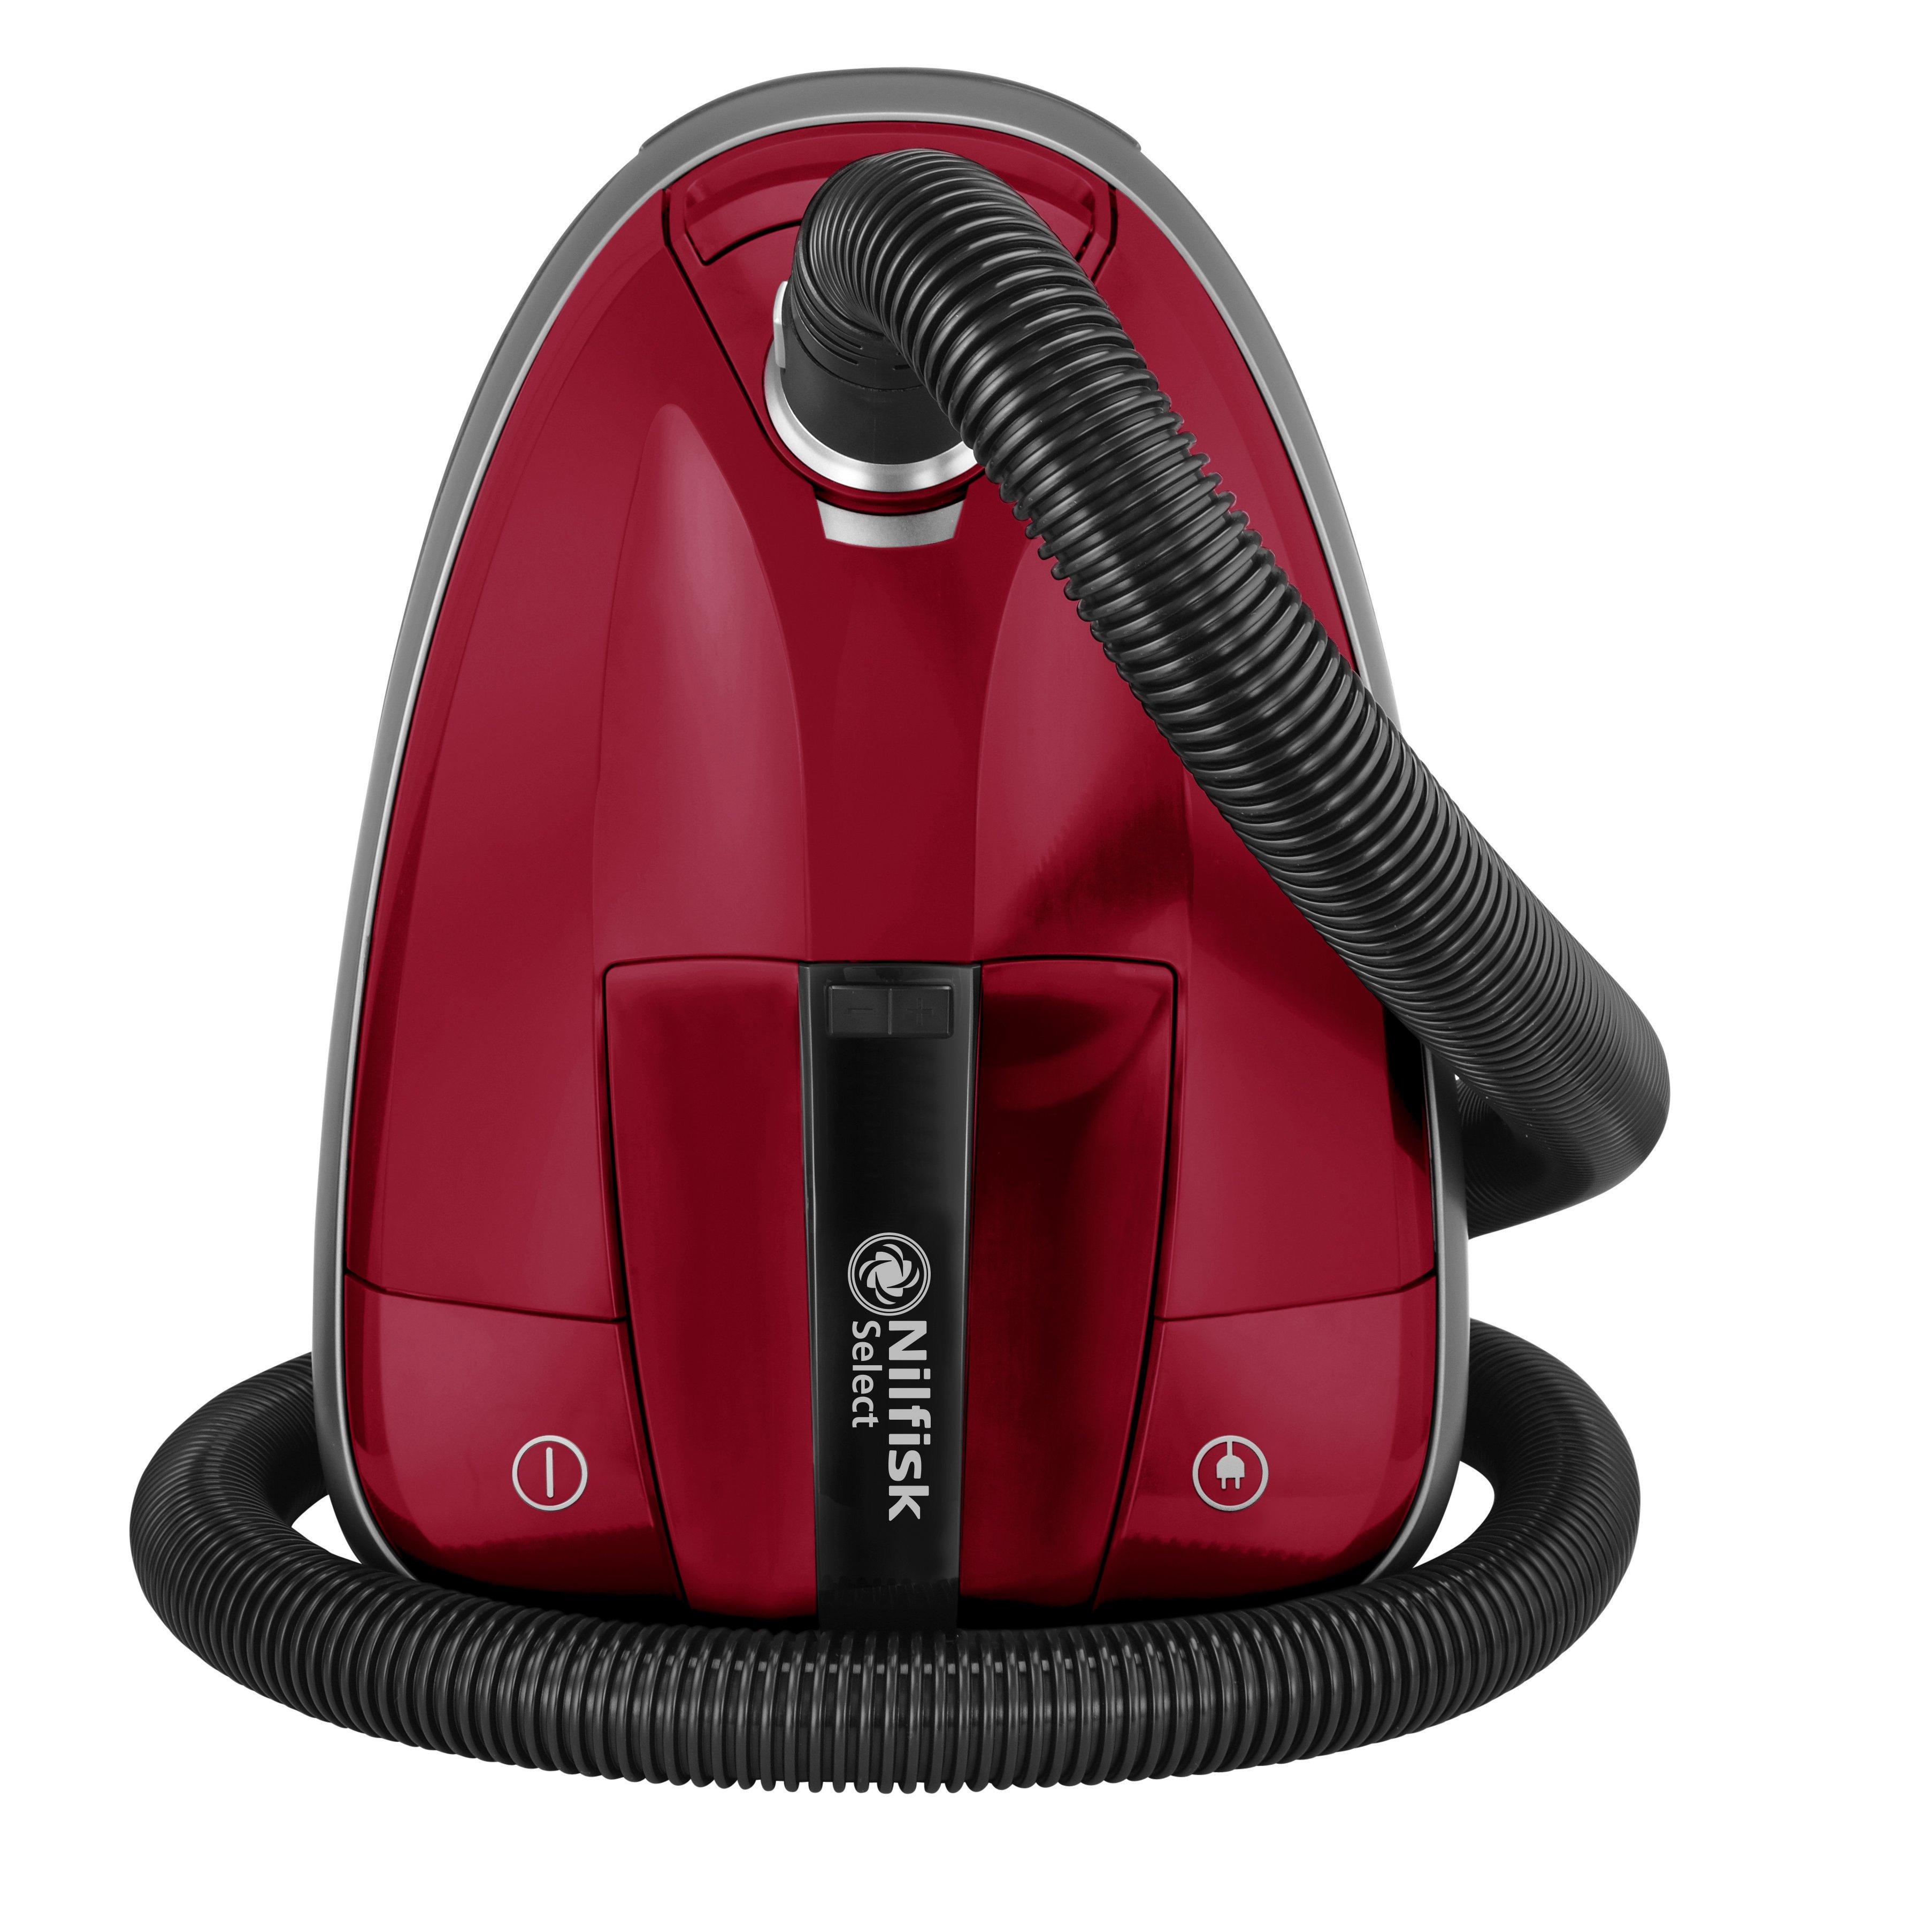 Kaupa Nilfisk - Select DRCL13E08A2 Classic Vacuum cleaner - FrÃ¡bÃ¦r verÃ°